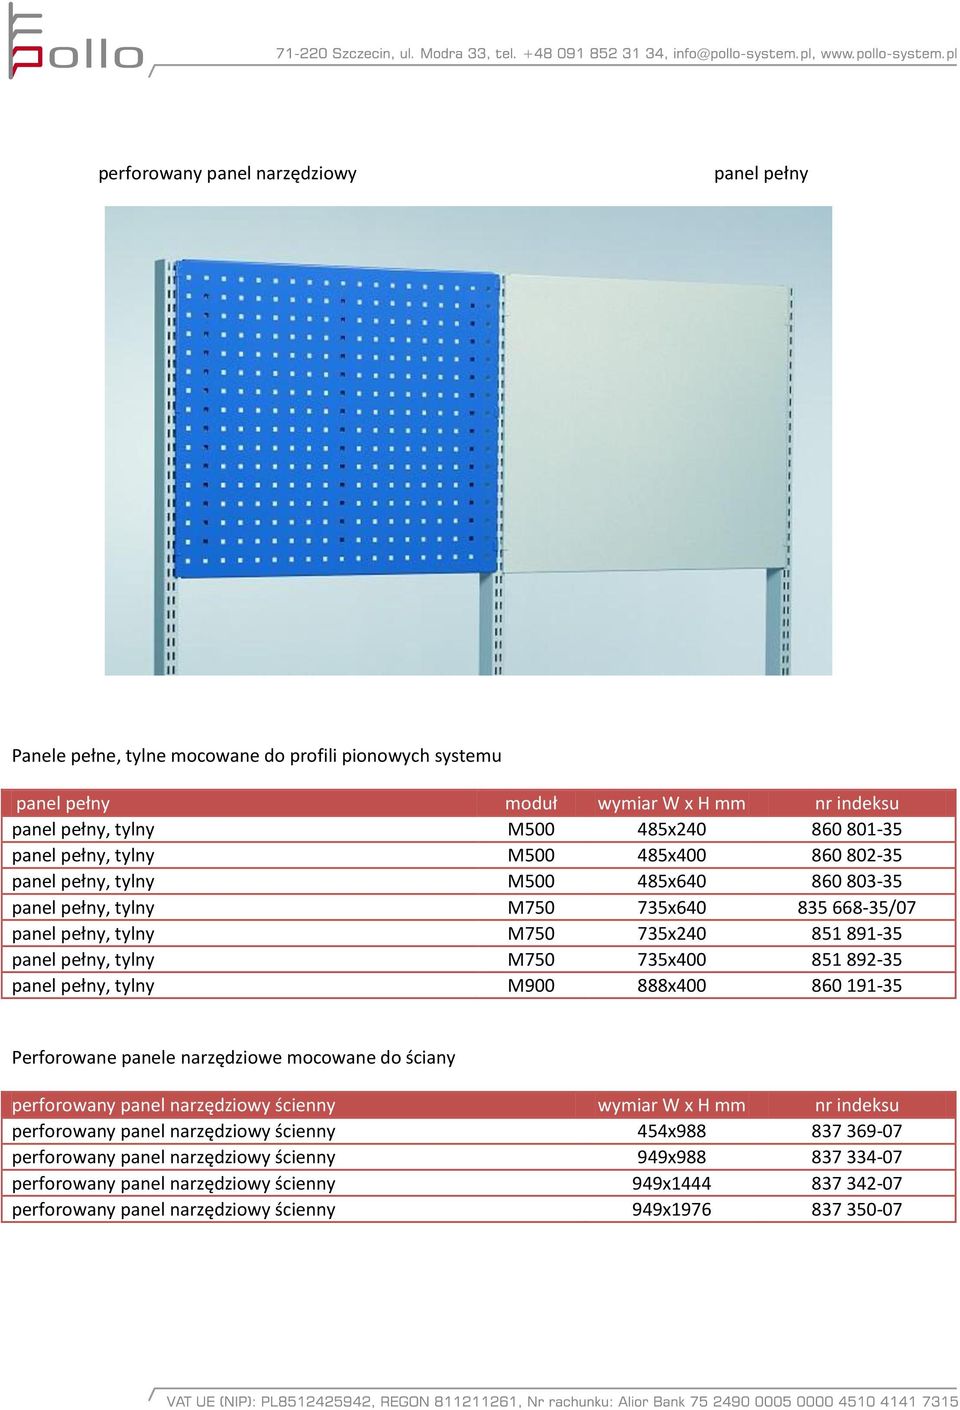 735x400 851 892-35 panel pełny, tylny M900 888x400 860 191-35 Perforowane panele narzędziowe mocowane do ściany perforowany panel narzędziowy ścienny wymiar W x H mm nr indeksu perforowany panel